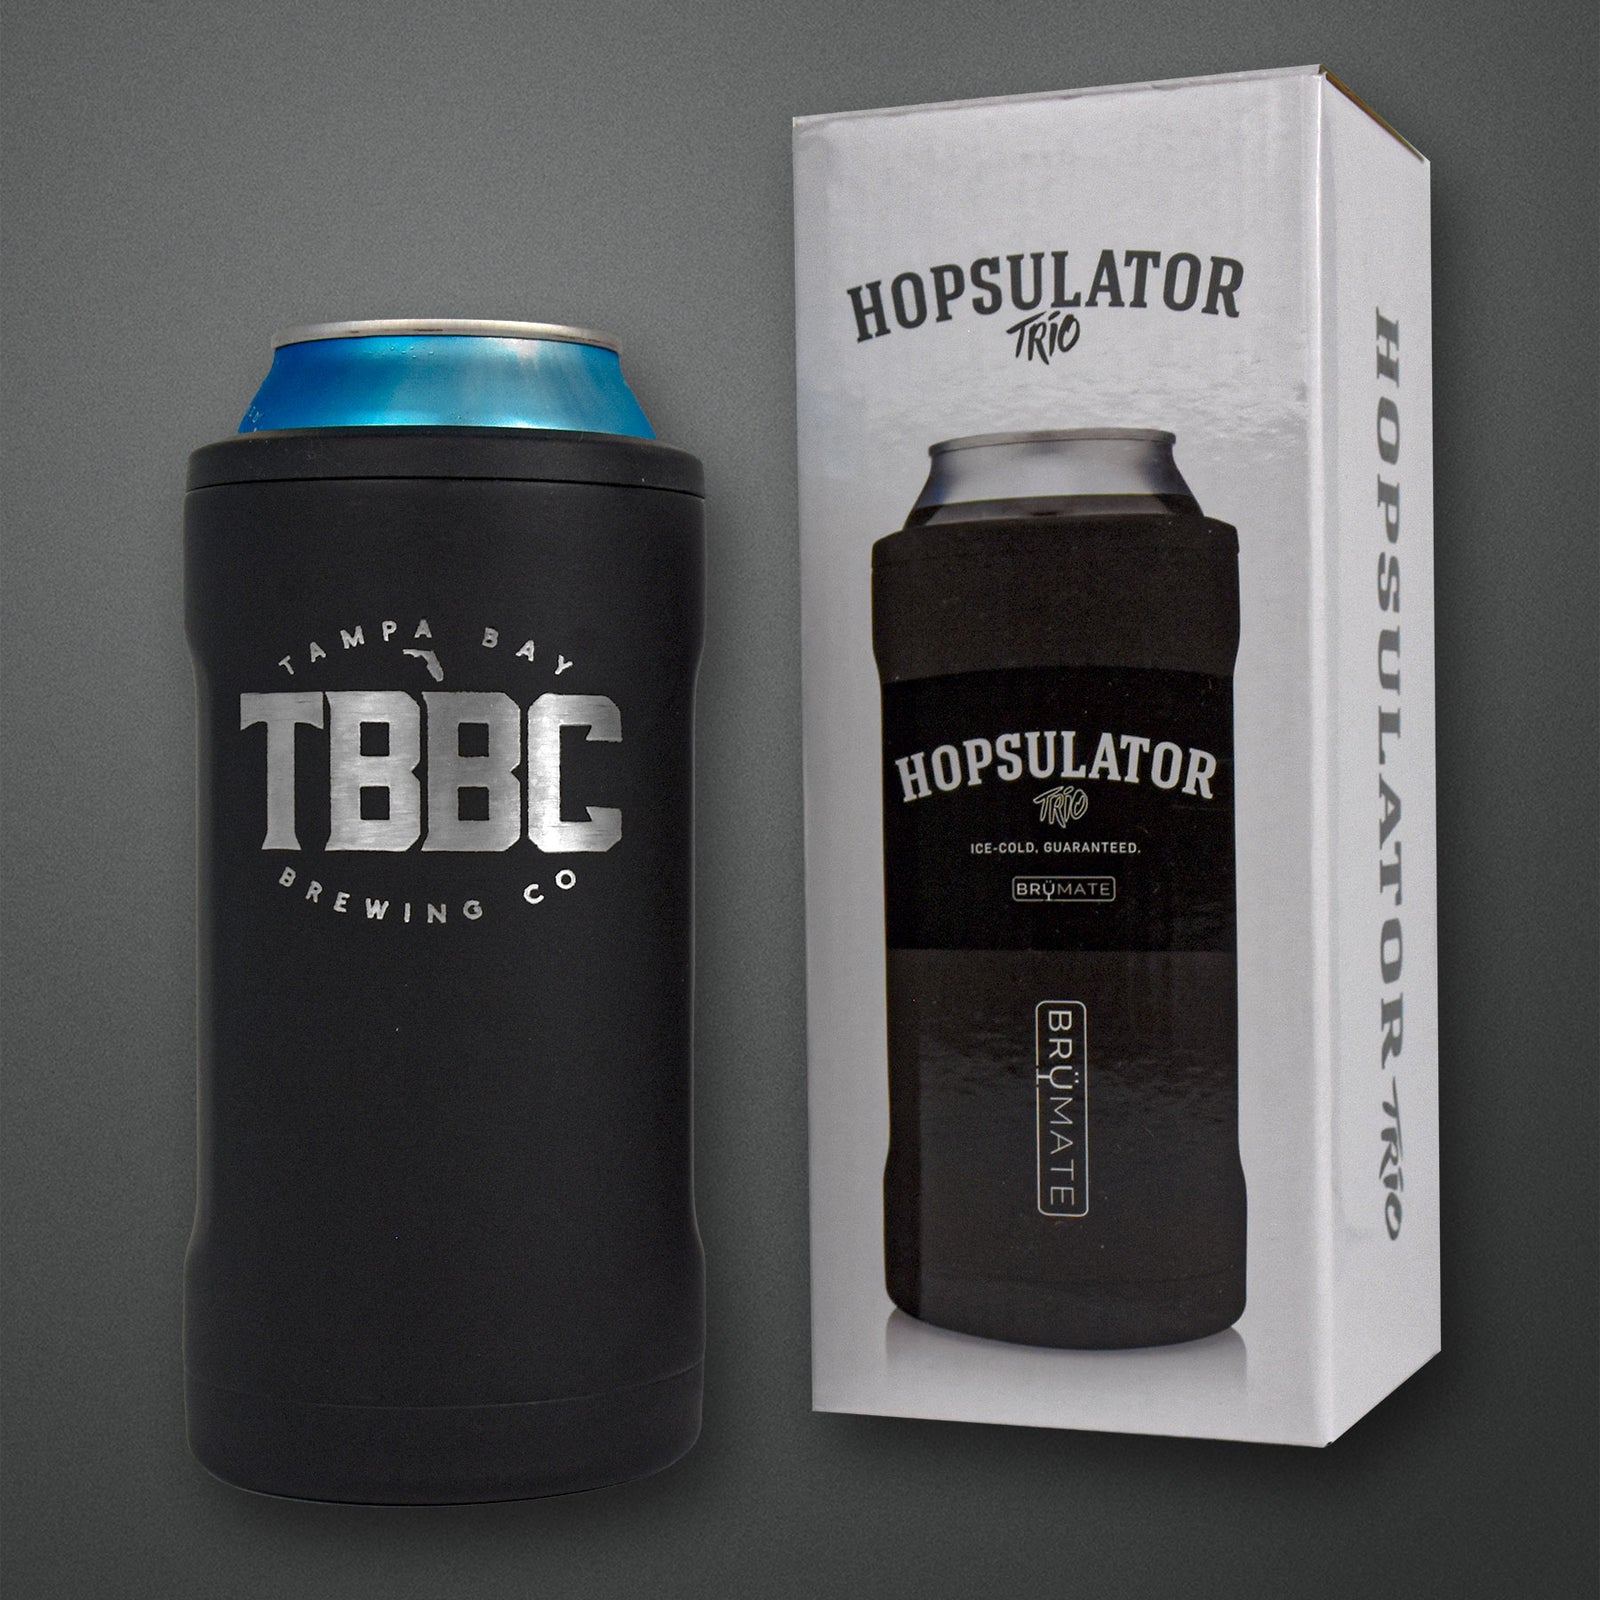 Hopsulator Trio 3-in-1 Beer Cooler